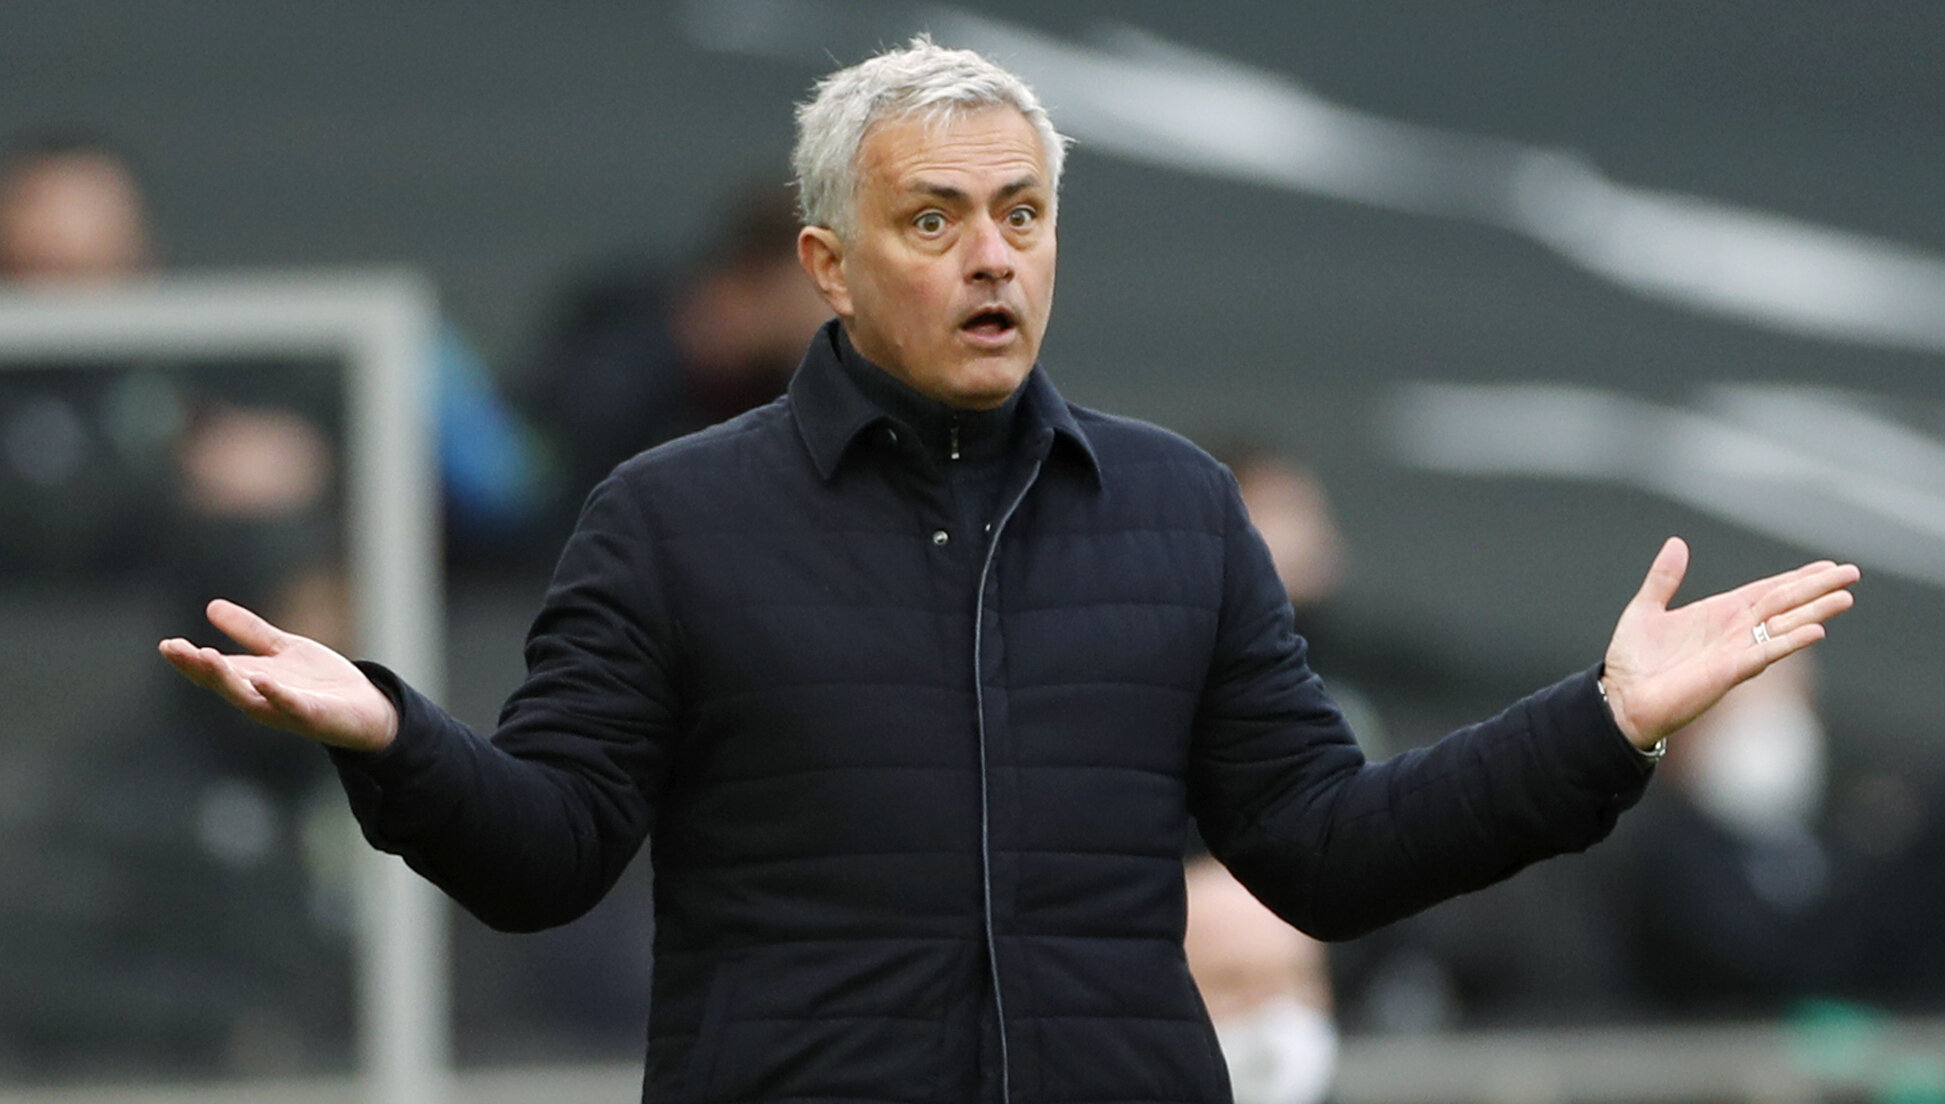 Jose Mourinho a fost demis din funcția de manager al clubului Tottenham Hotspur